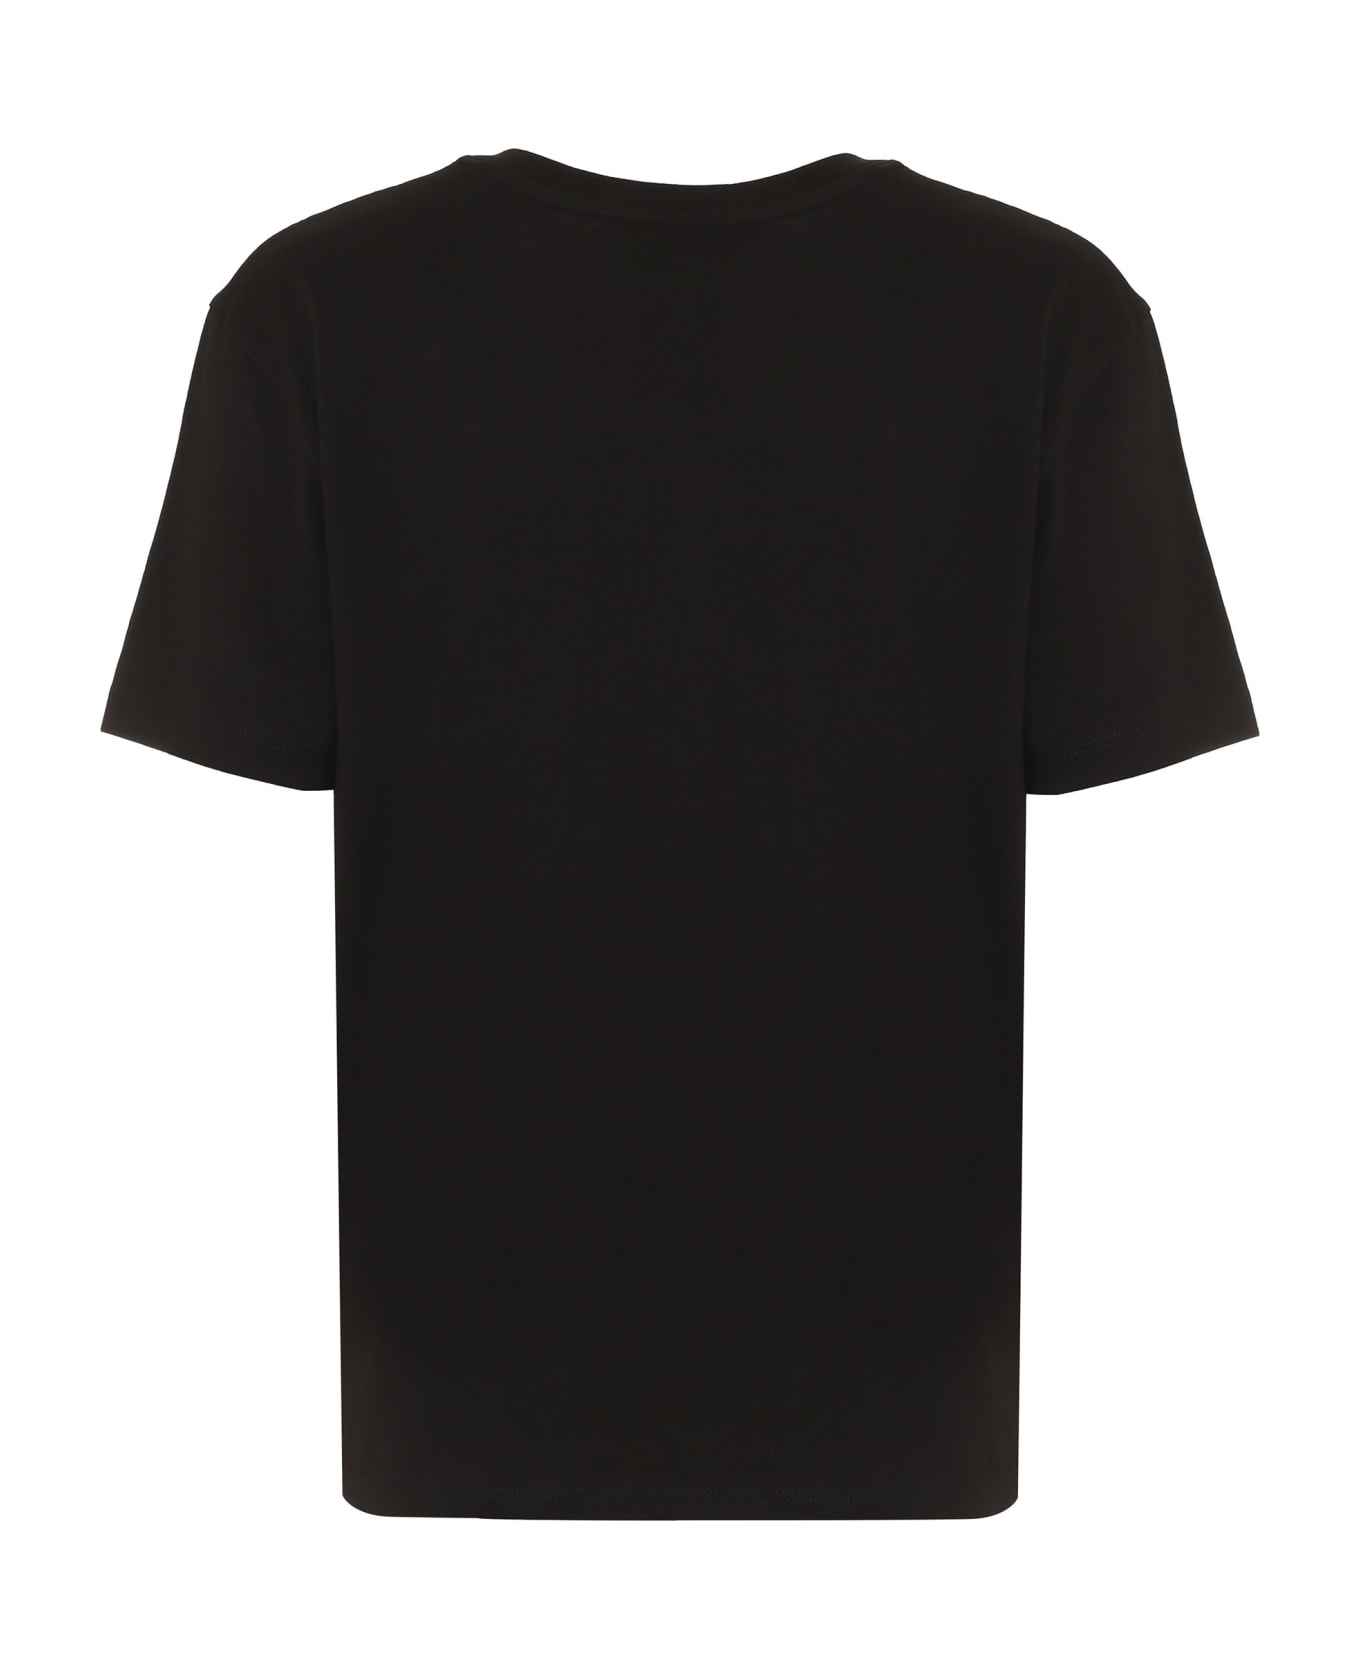 Vince Cotton T-shirt - Blk Black Tシャツ